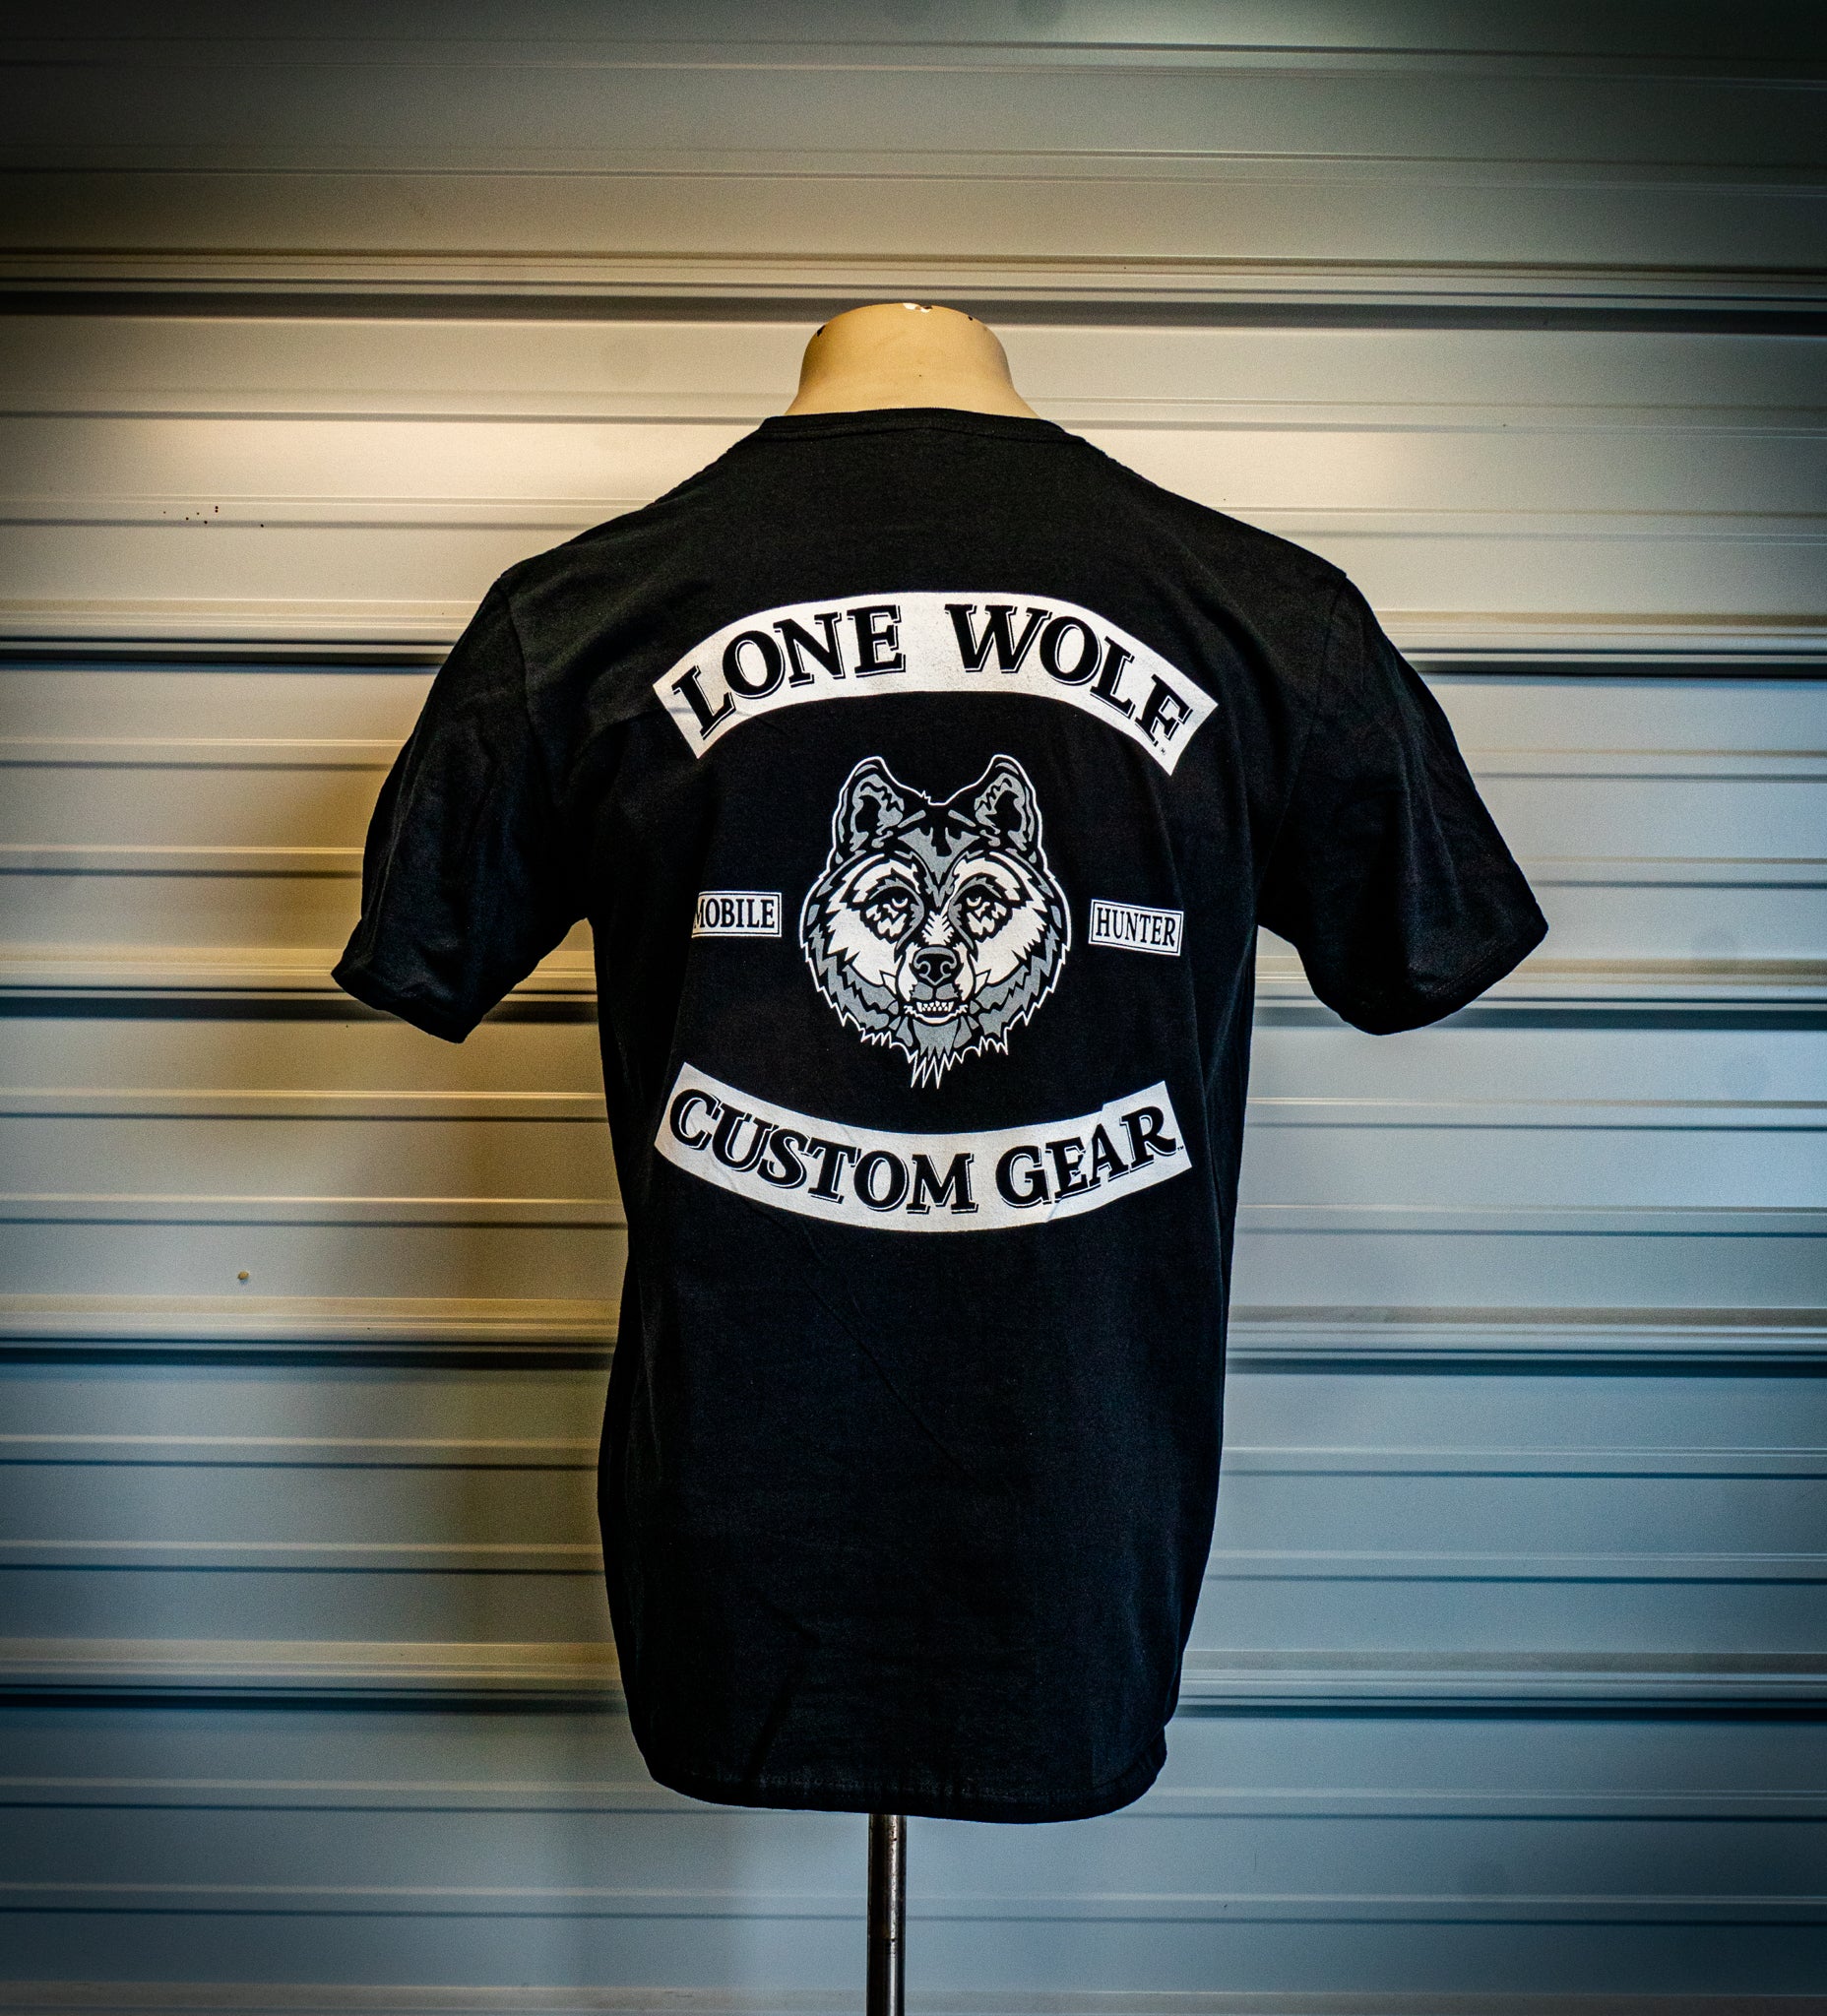 Lone Wolf Custom Gear Rocker T-Shirt